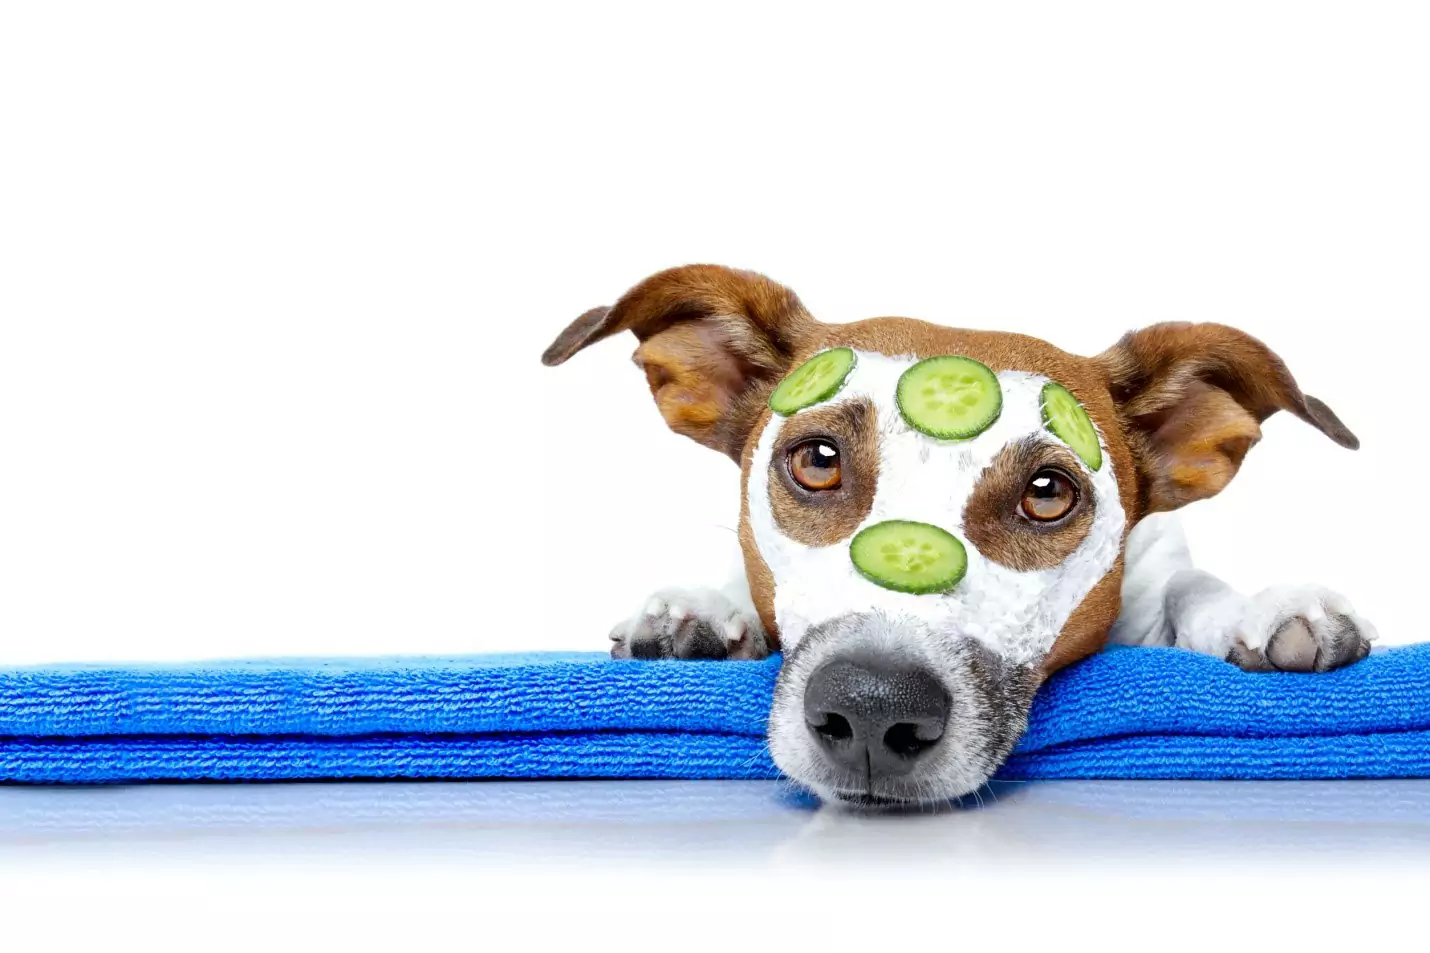 Les chiens peuvent-ils manger des concombres ? Quels sont les avantages de donner des concombres aux chiens ?